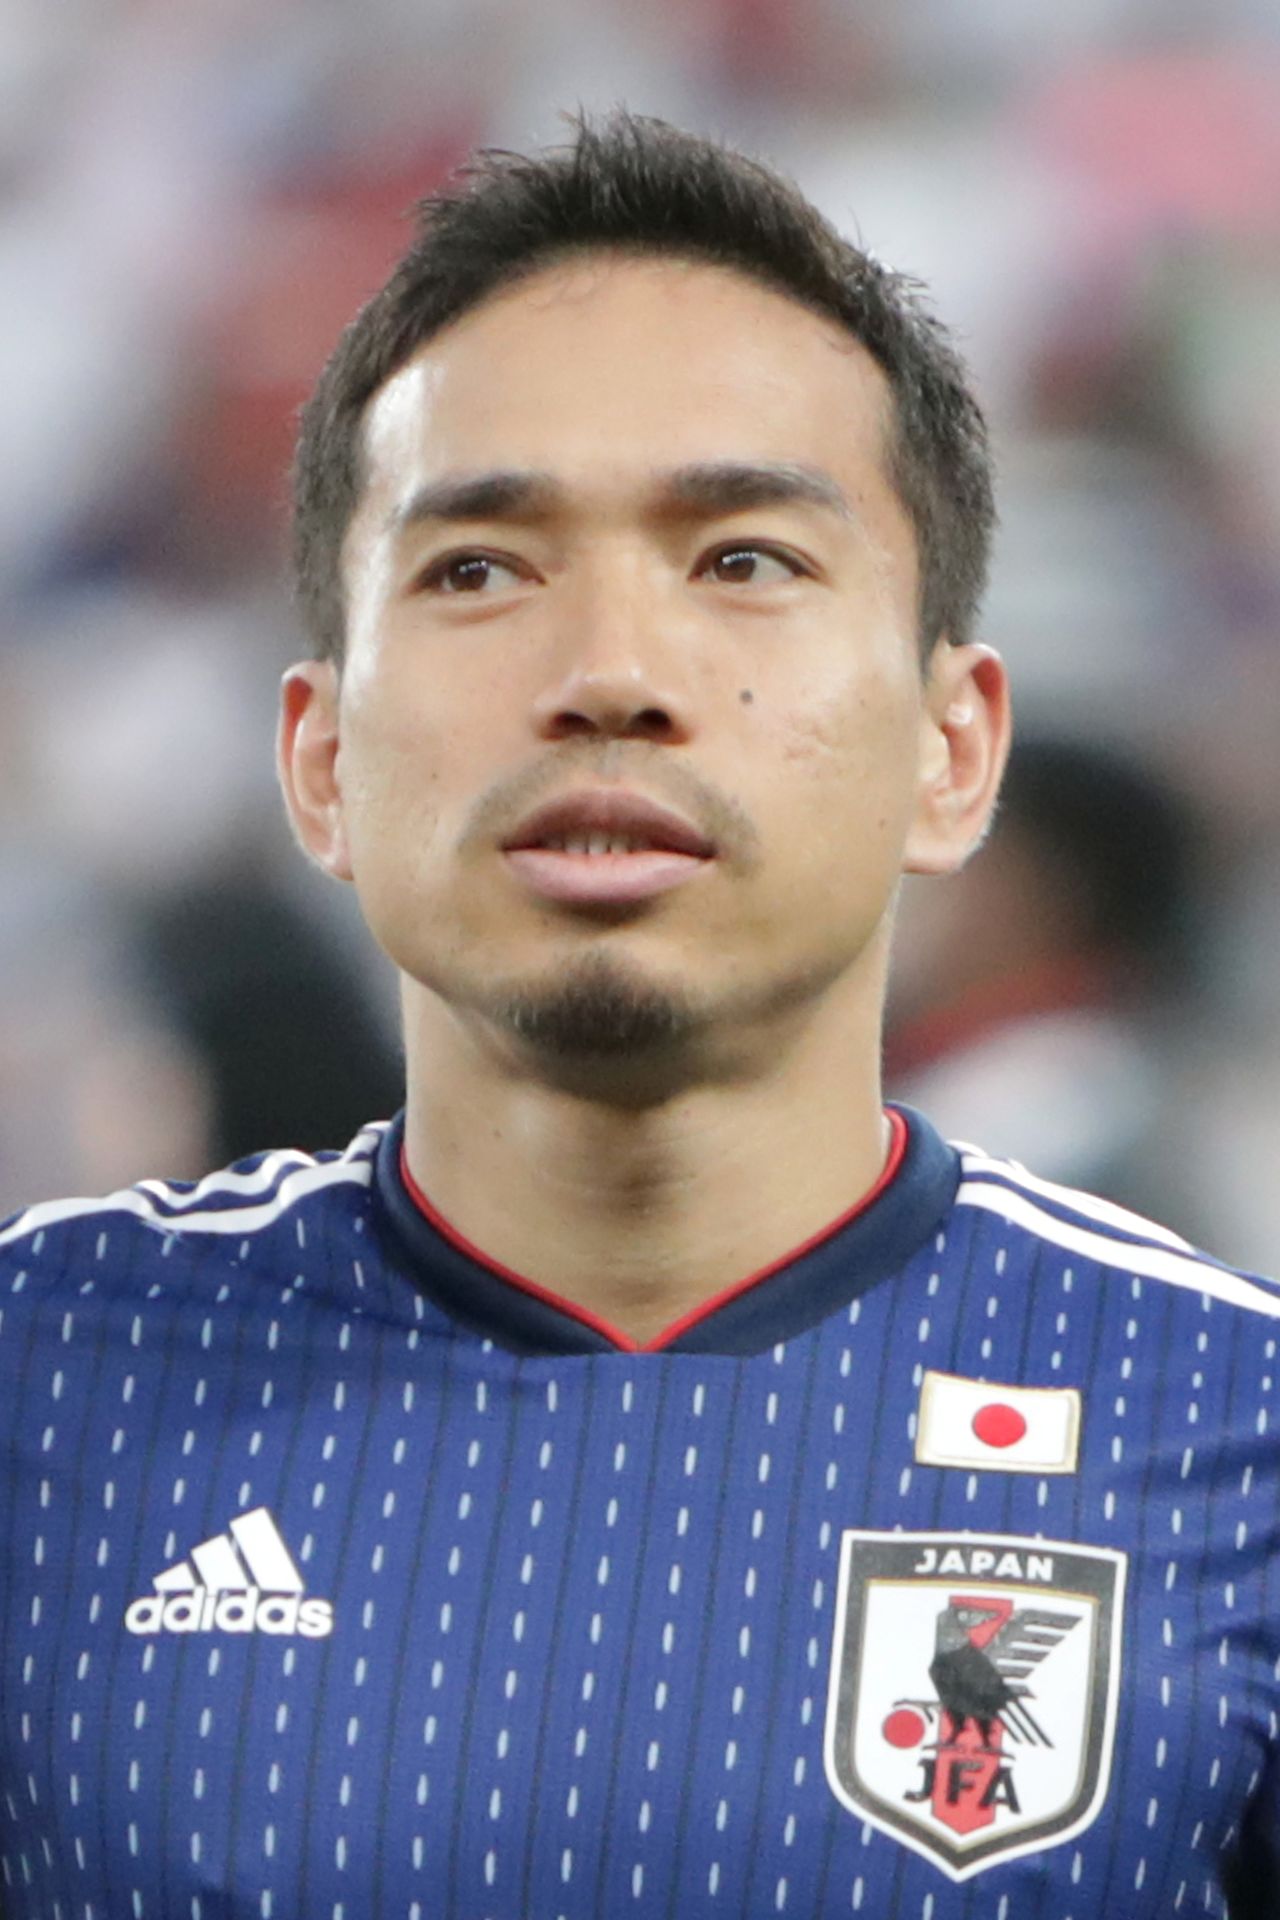 اللاعب الياباني الدولي يوتو ناجاتومو في صورة من أرشيف رويترز.